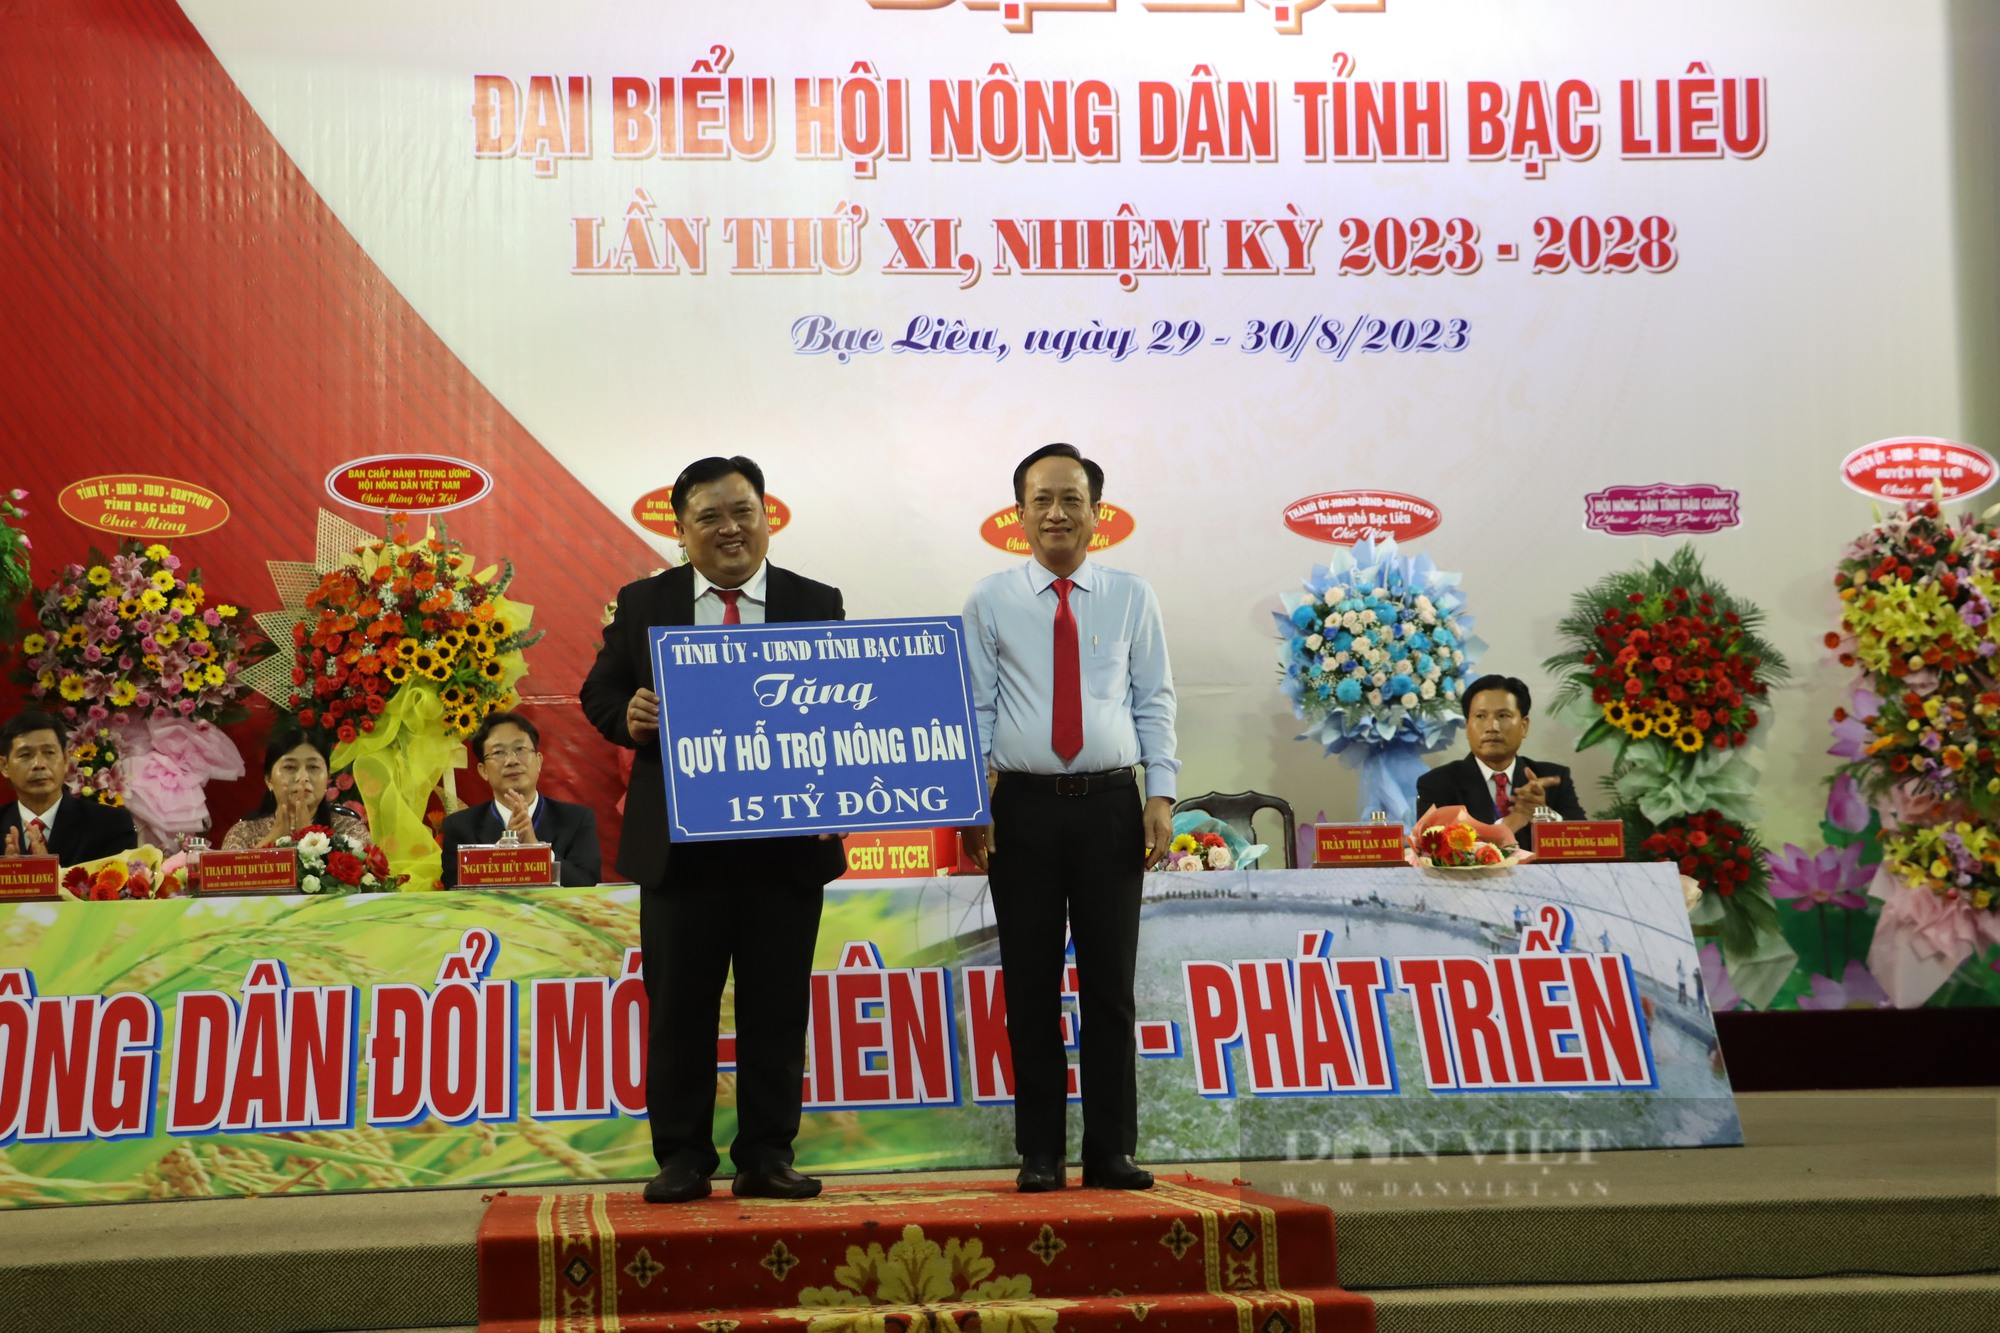 Bí thư Tỉnh ủy Bạc Liêu và Phó Chủ tịch BCH TƯ Hội NDVN dự, chỉ đạo Đại hội đại biểu Hội Nông dân tỉnh - Ảnh 10.